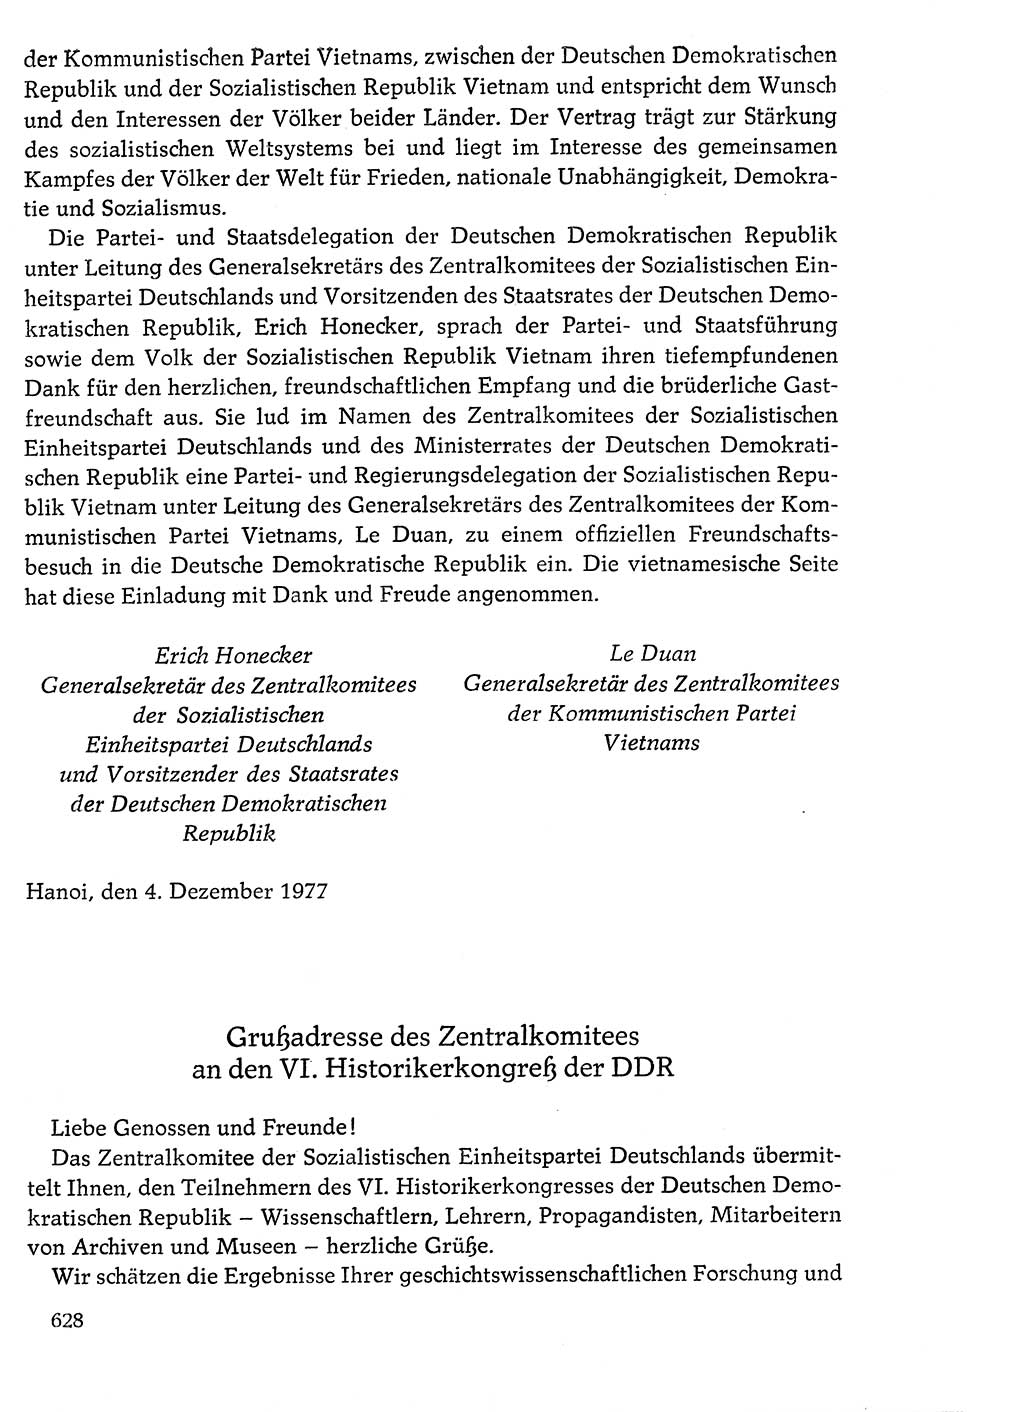 Dokumente der Sozialistischen Einheitspartei Deutschlands (SED) [Deutsche Demokratische Republik (DDR)] 1976-1977, Seite 628 (Dok. SED DDR 1976-1977, S. 628)